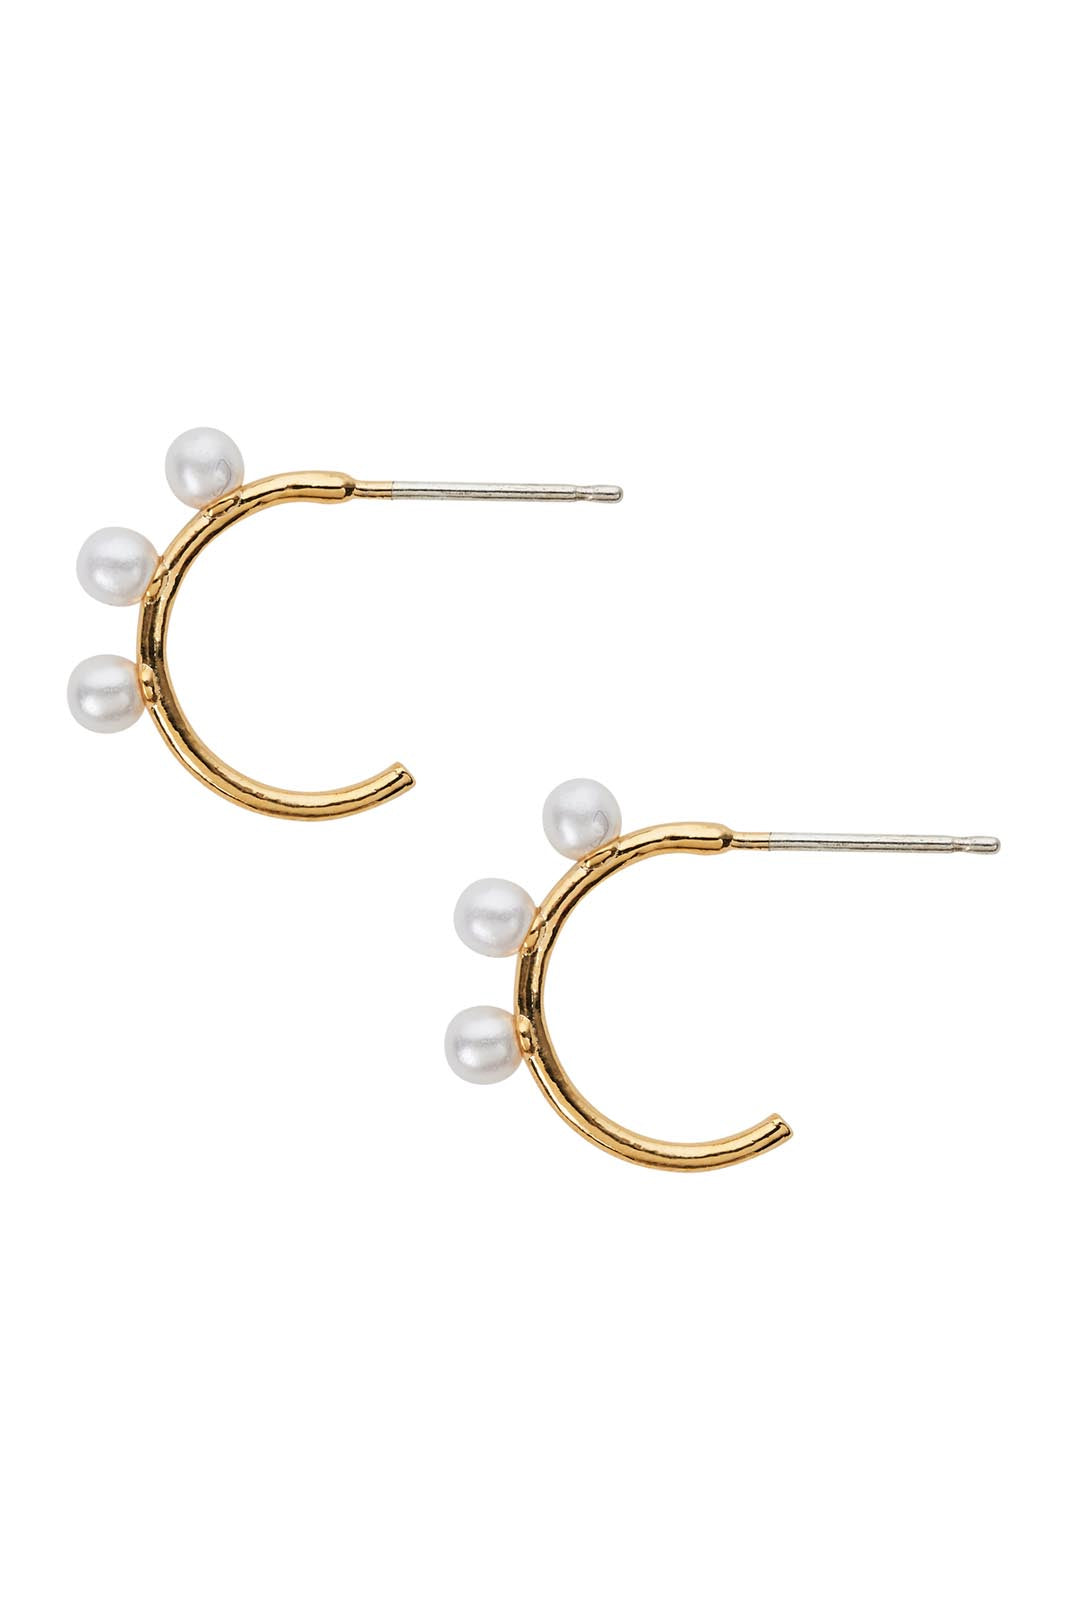 Heritage Earring - Pearl Hoop - eb&ive Earring